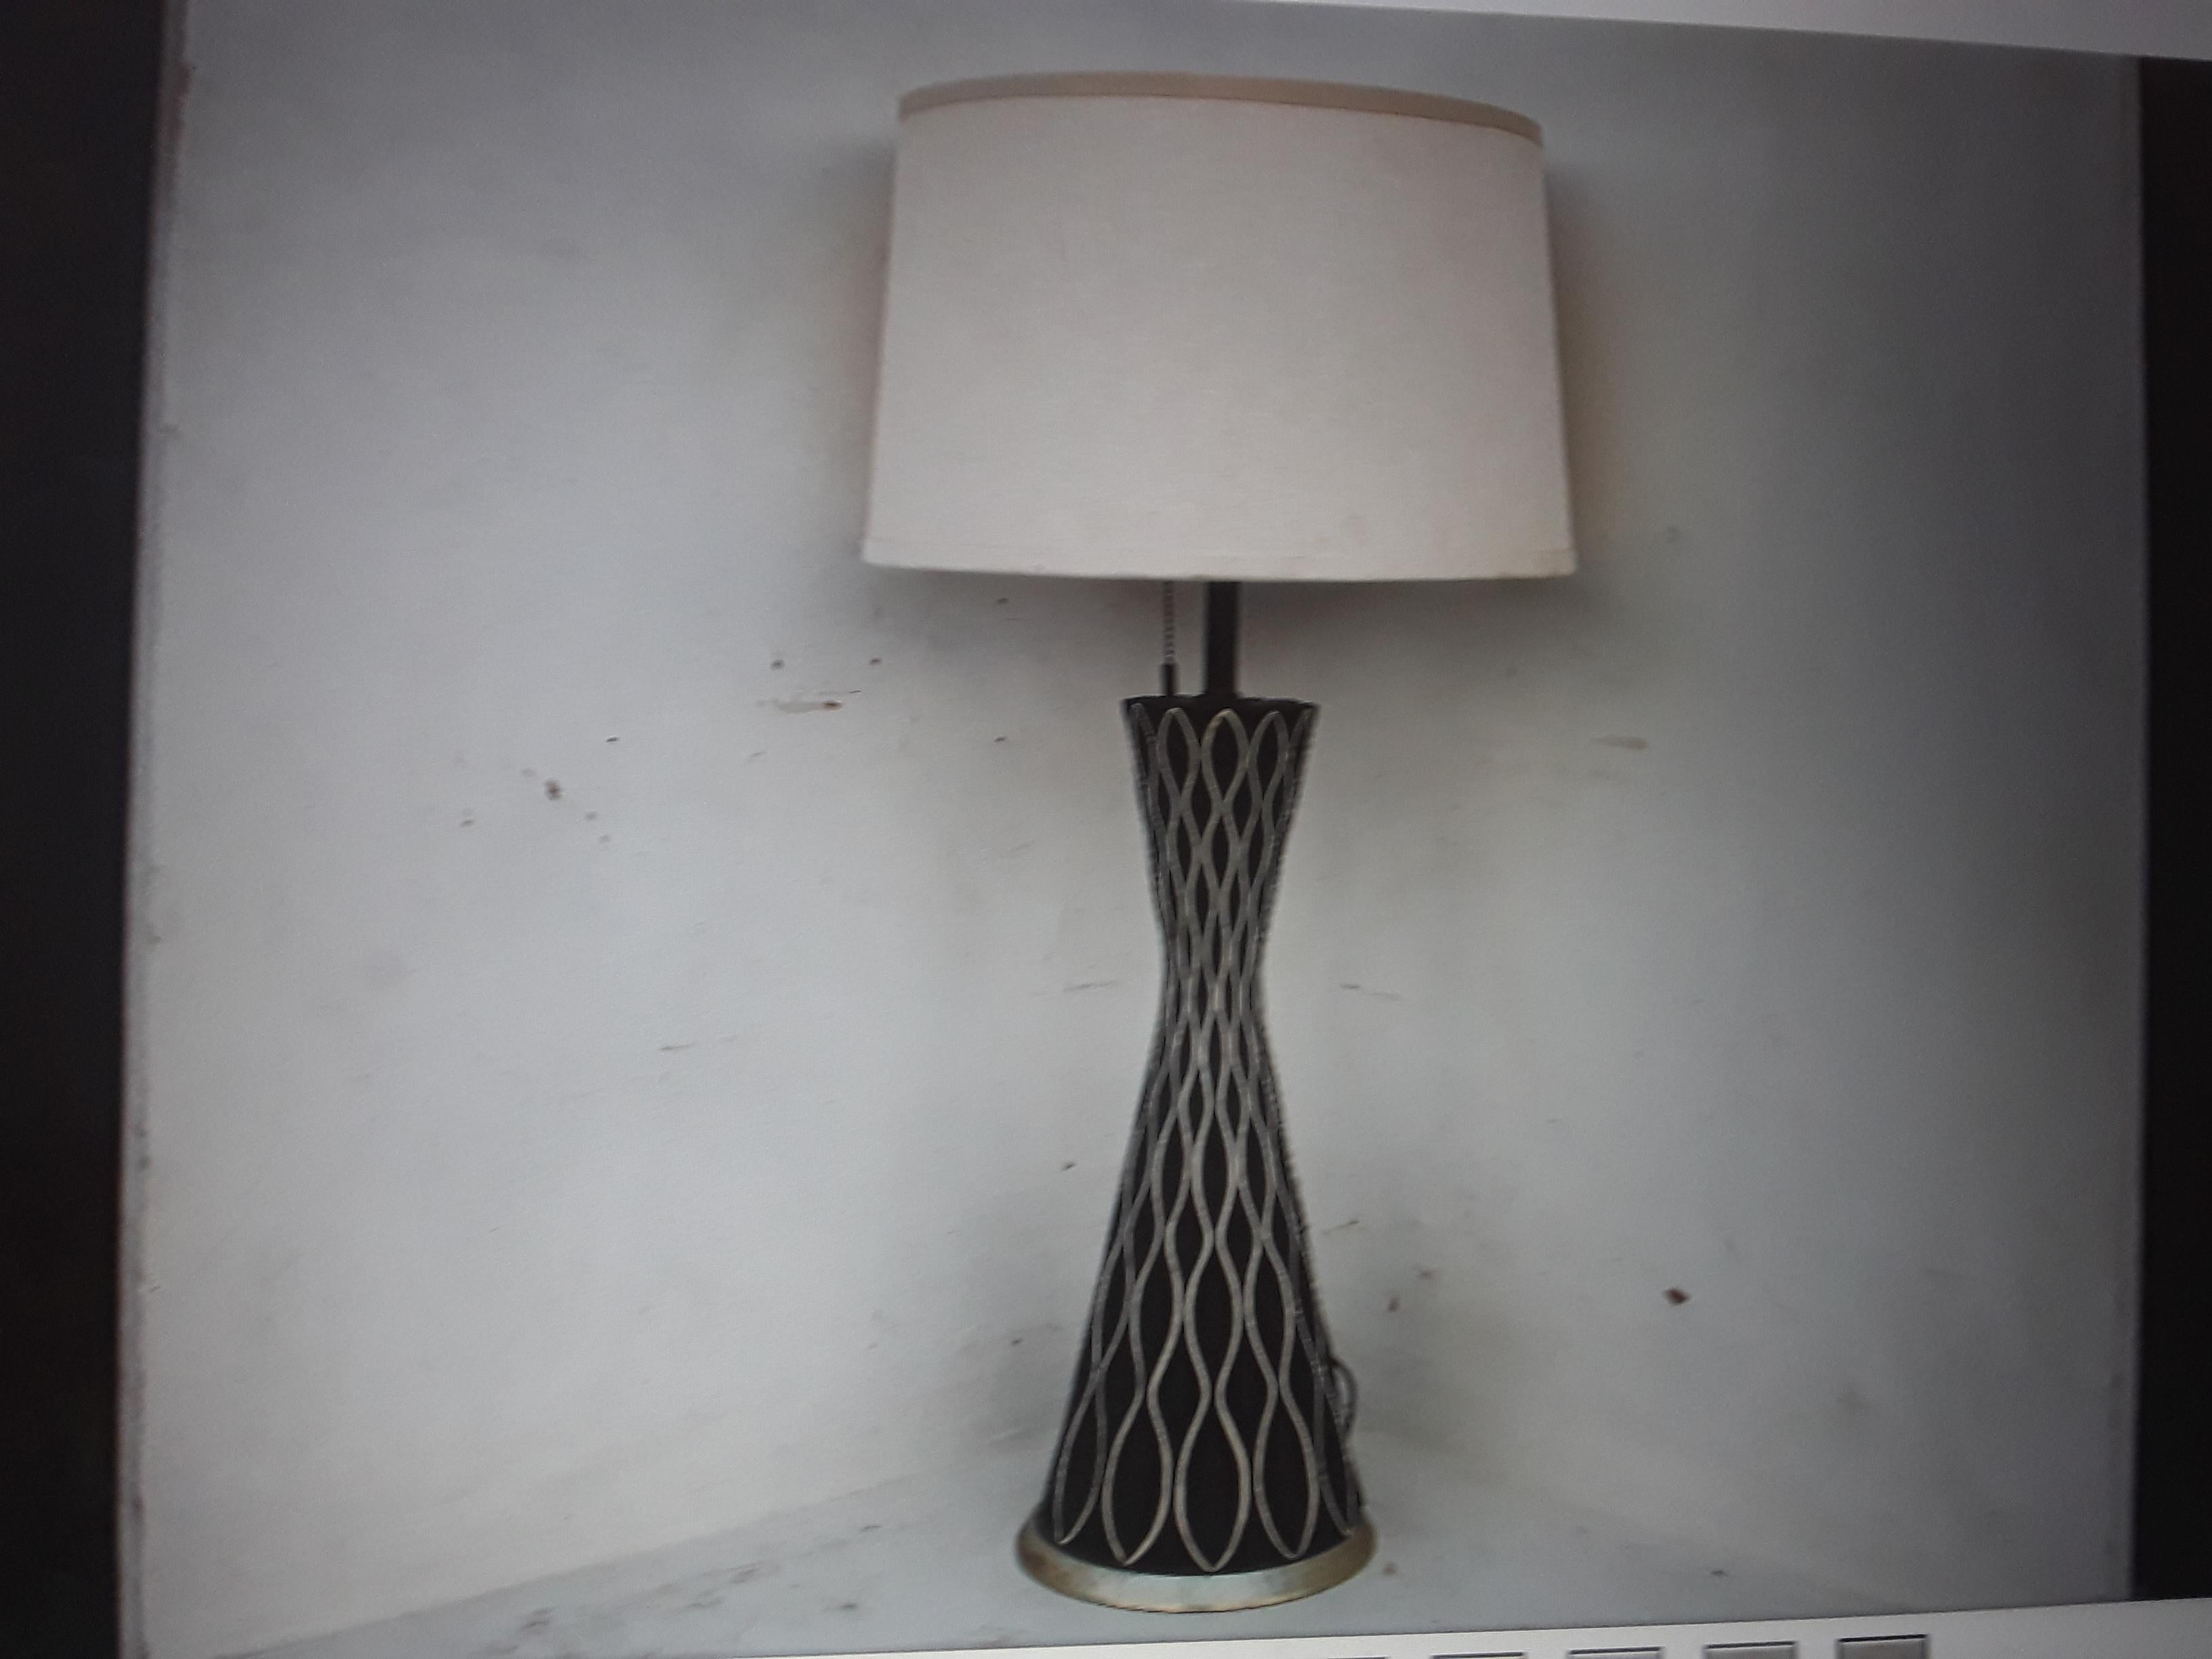 Magnifique et inhabituelle lampe de table en céramique de l'ère atomique du milieu du siècle moderne futuriste des années 1960. Abat-jour inclus et cette lampe fonctionne avec 3 ampoules. Très bonne qualité.